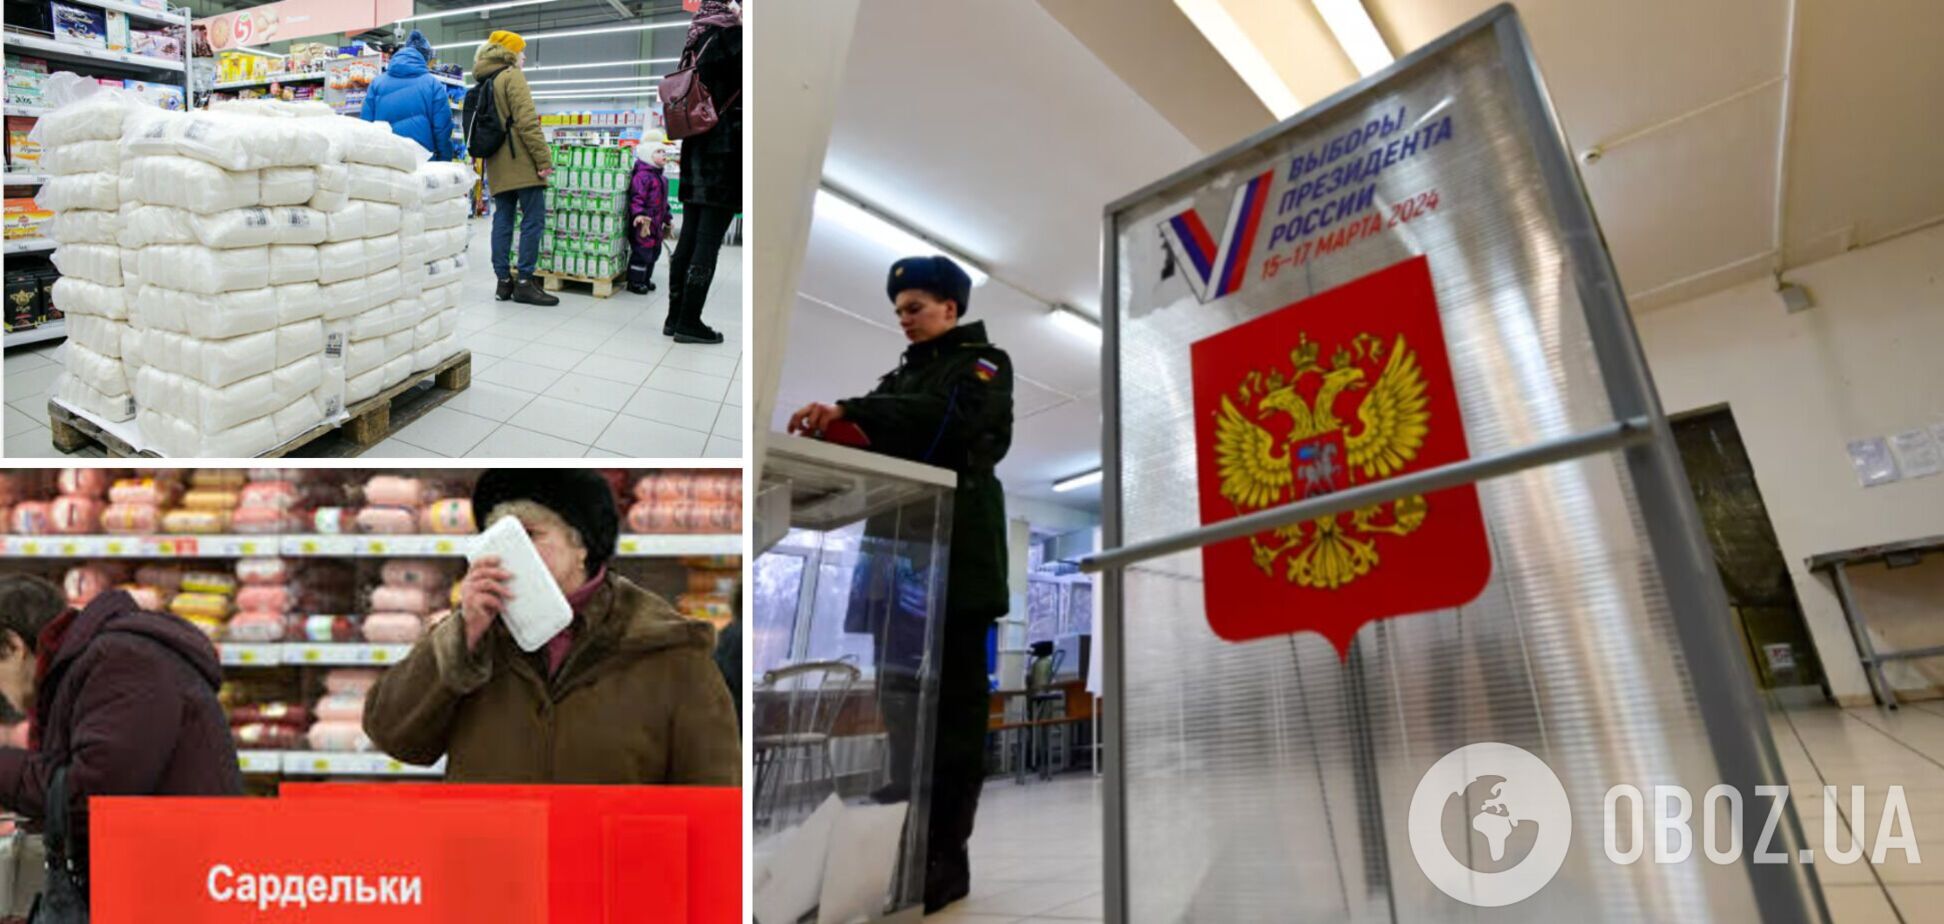 Россияне больше не едят из мусорки, теперь они воруют продукты в магазинах. Как изменился уровень бедности в РФ